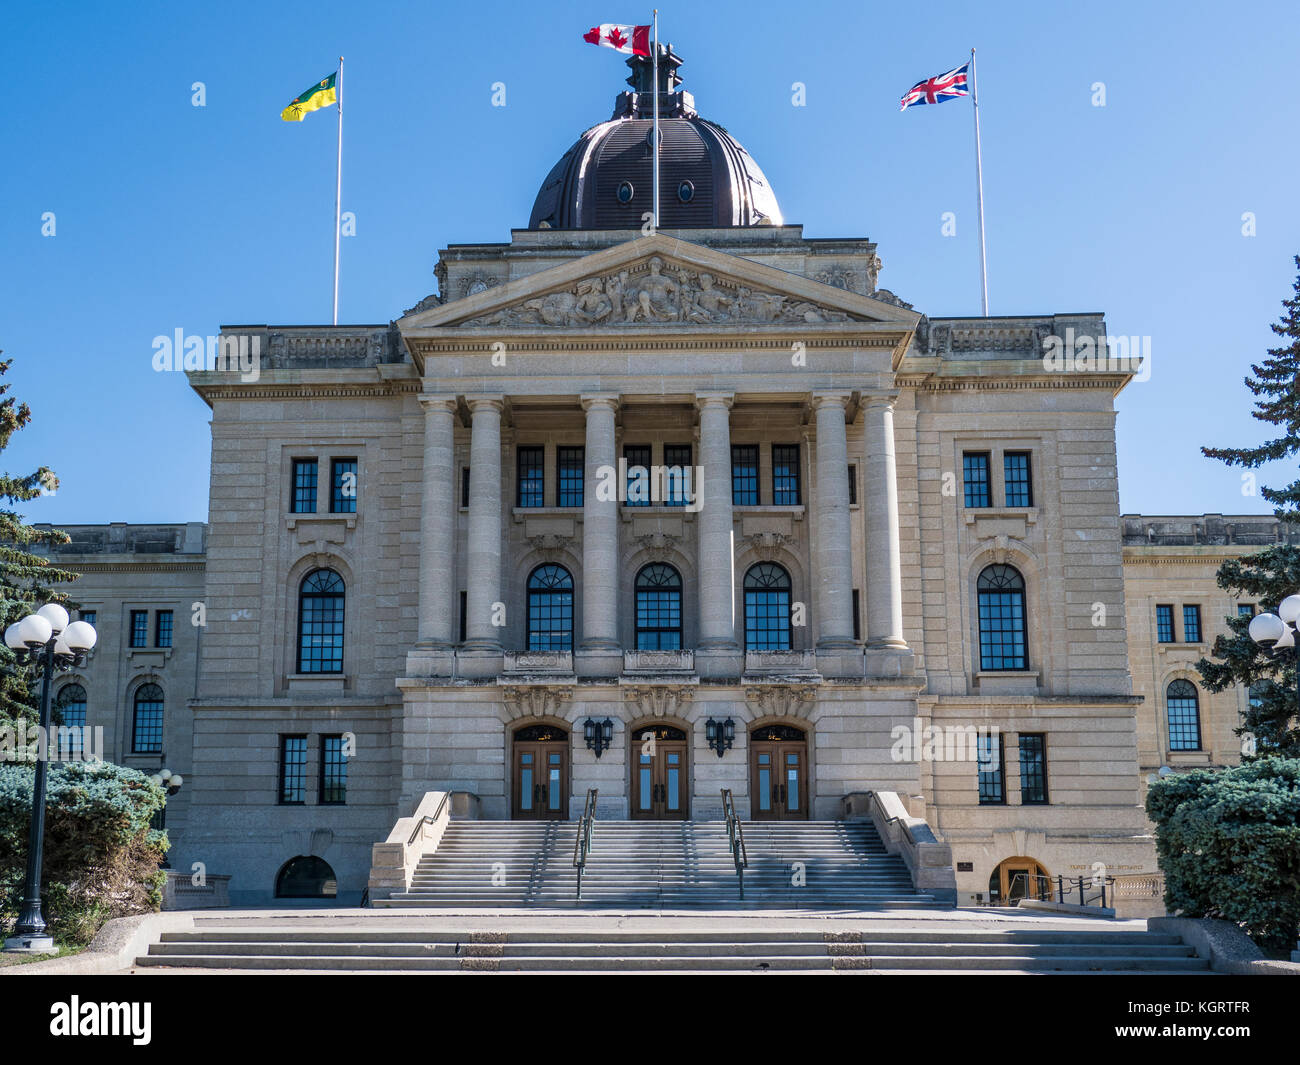 Saskatchewan Legislative Building, provincial capitol, Wascana Centre, Regina, Saskatchewan, Canada. Stock Photo